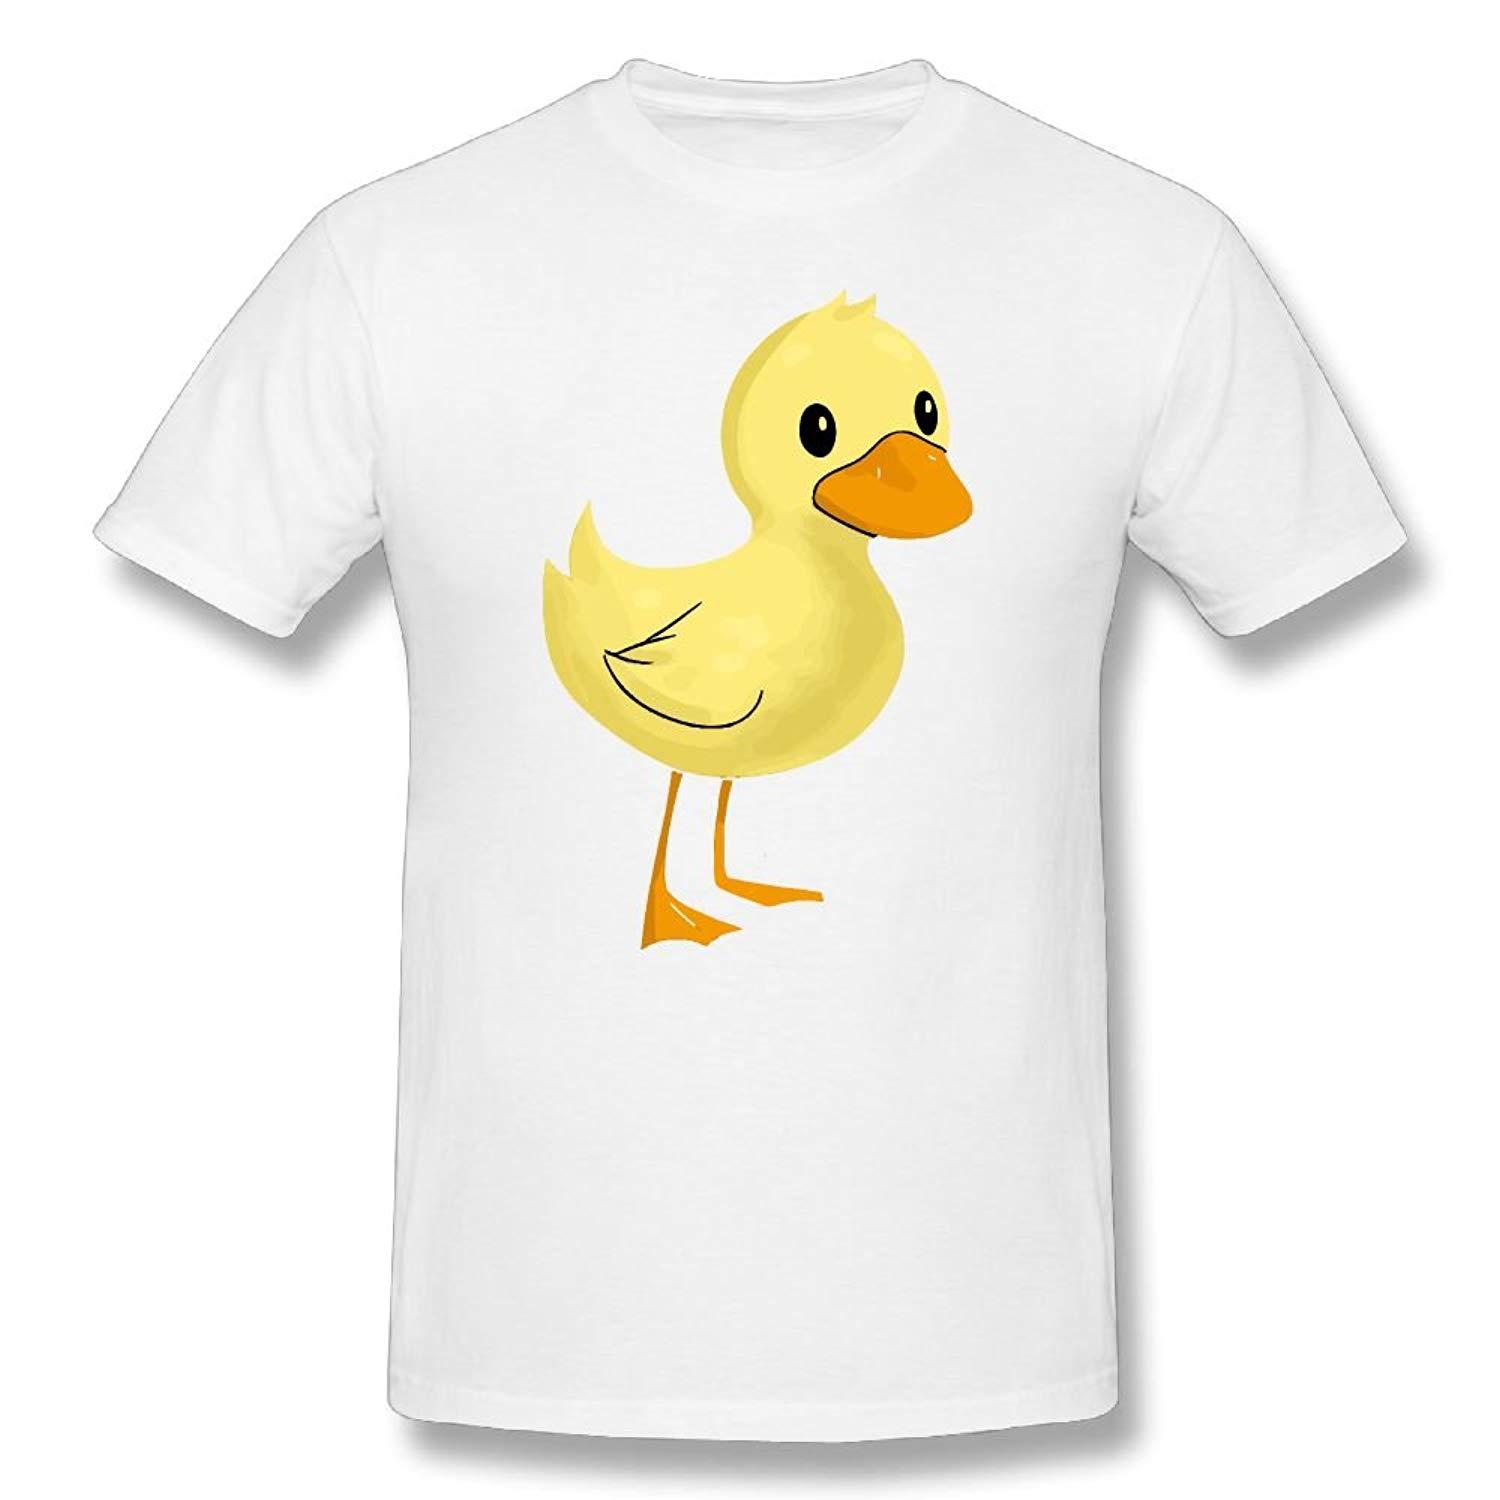 Cotton Clipart Cotton Shirt Picture 2553853 Cotton Clipart Cotton Shirt - t shirt11png roblox